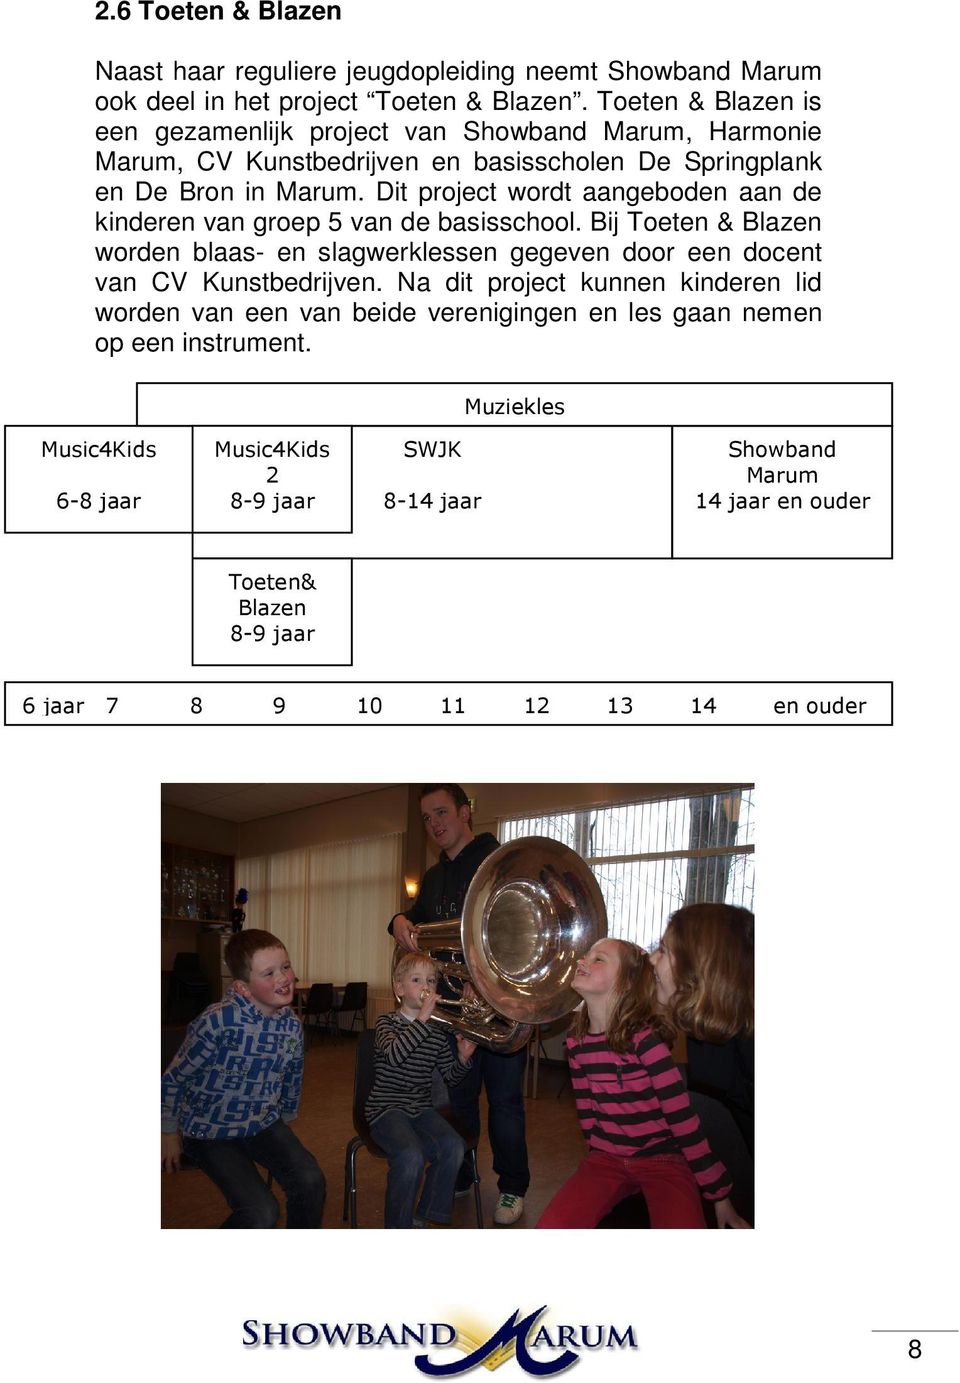 Dit project wordt aangeboden aan de kinderen van groep 5 van de basisschool. Bij Toeten & Blazen worden blaas- en slagwerklessen gegeven door een docent van CV Kunstbedrijven.